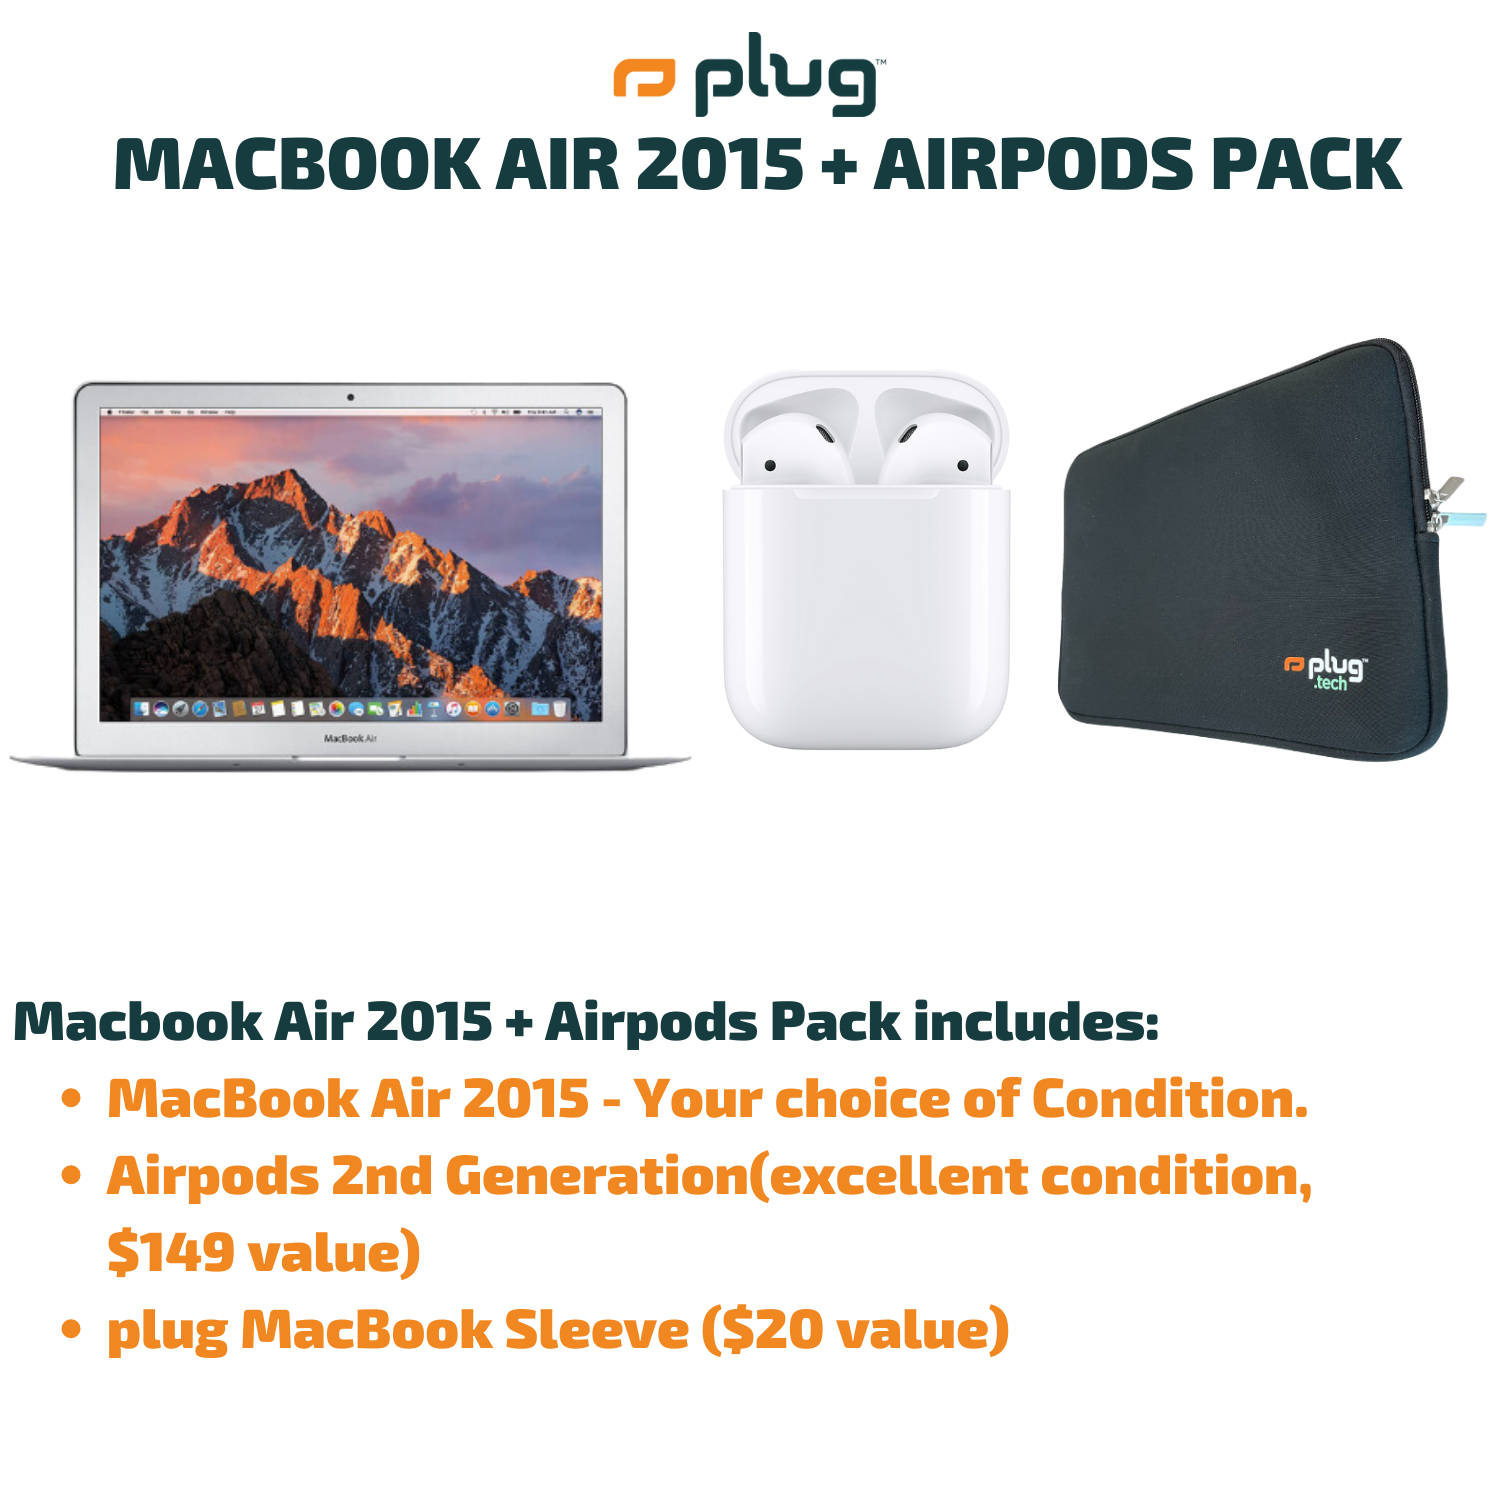 MacBook Air 2015 + Airpods Pack